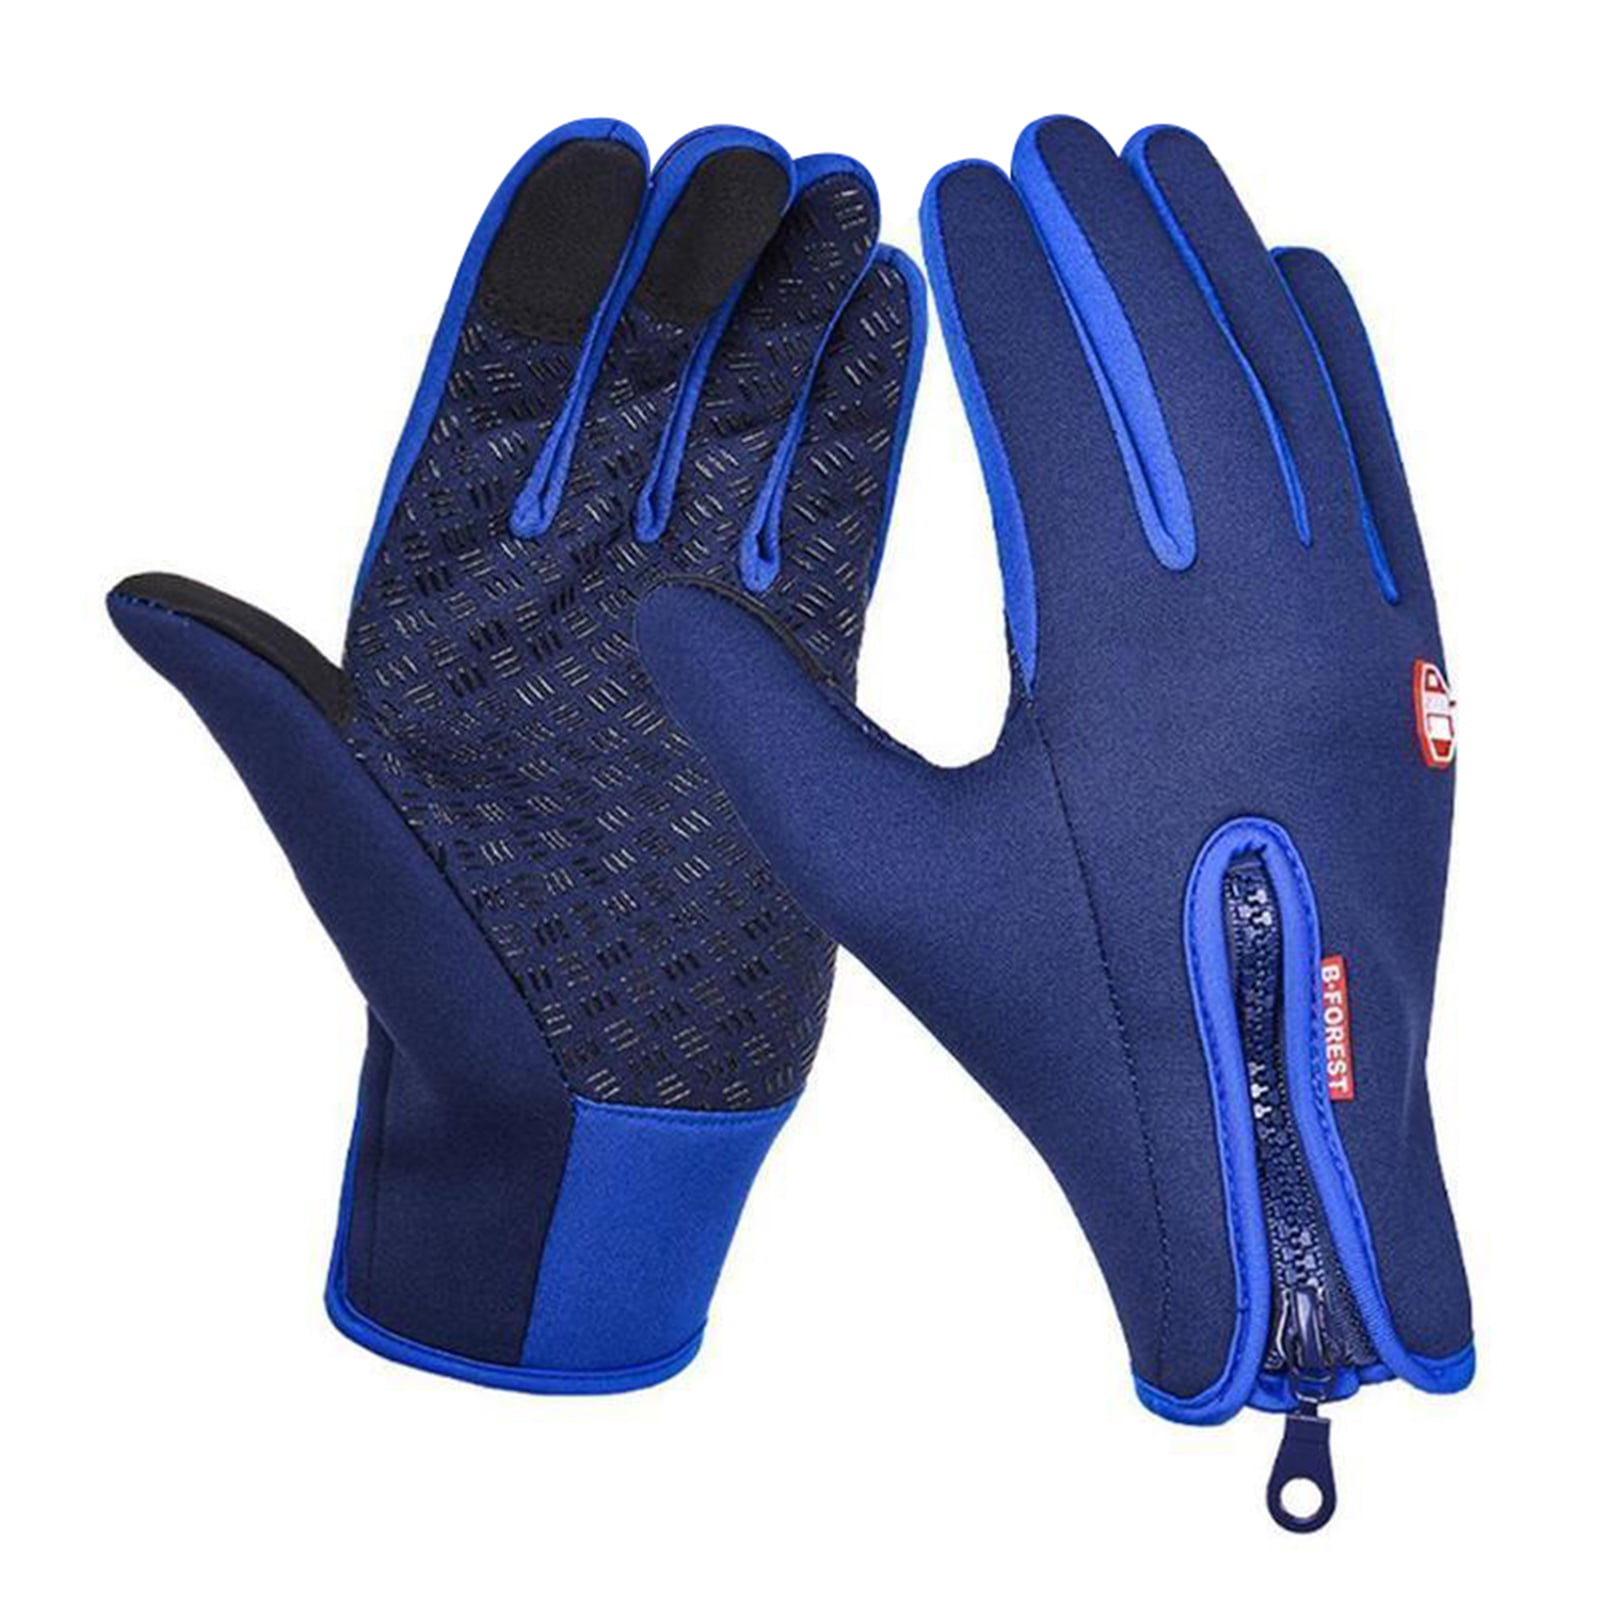 Winter Gloves Unisex Premium Waterproof Touchscreen Winter Gloves 